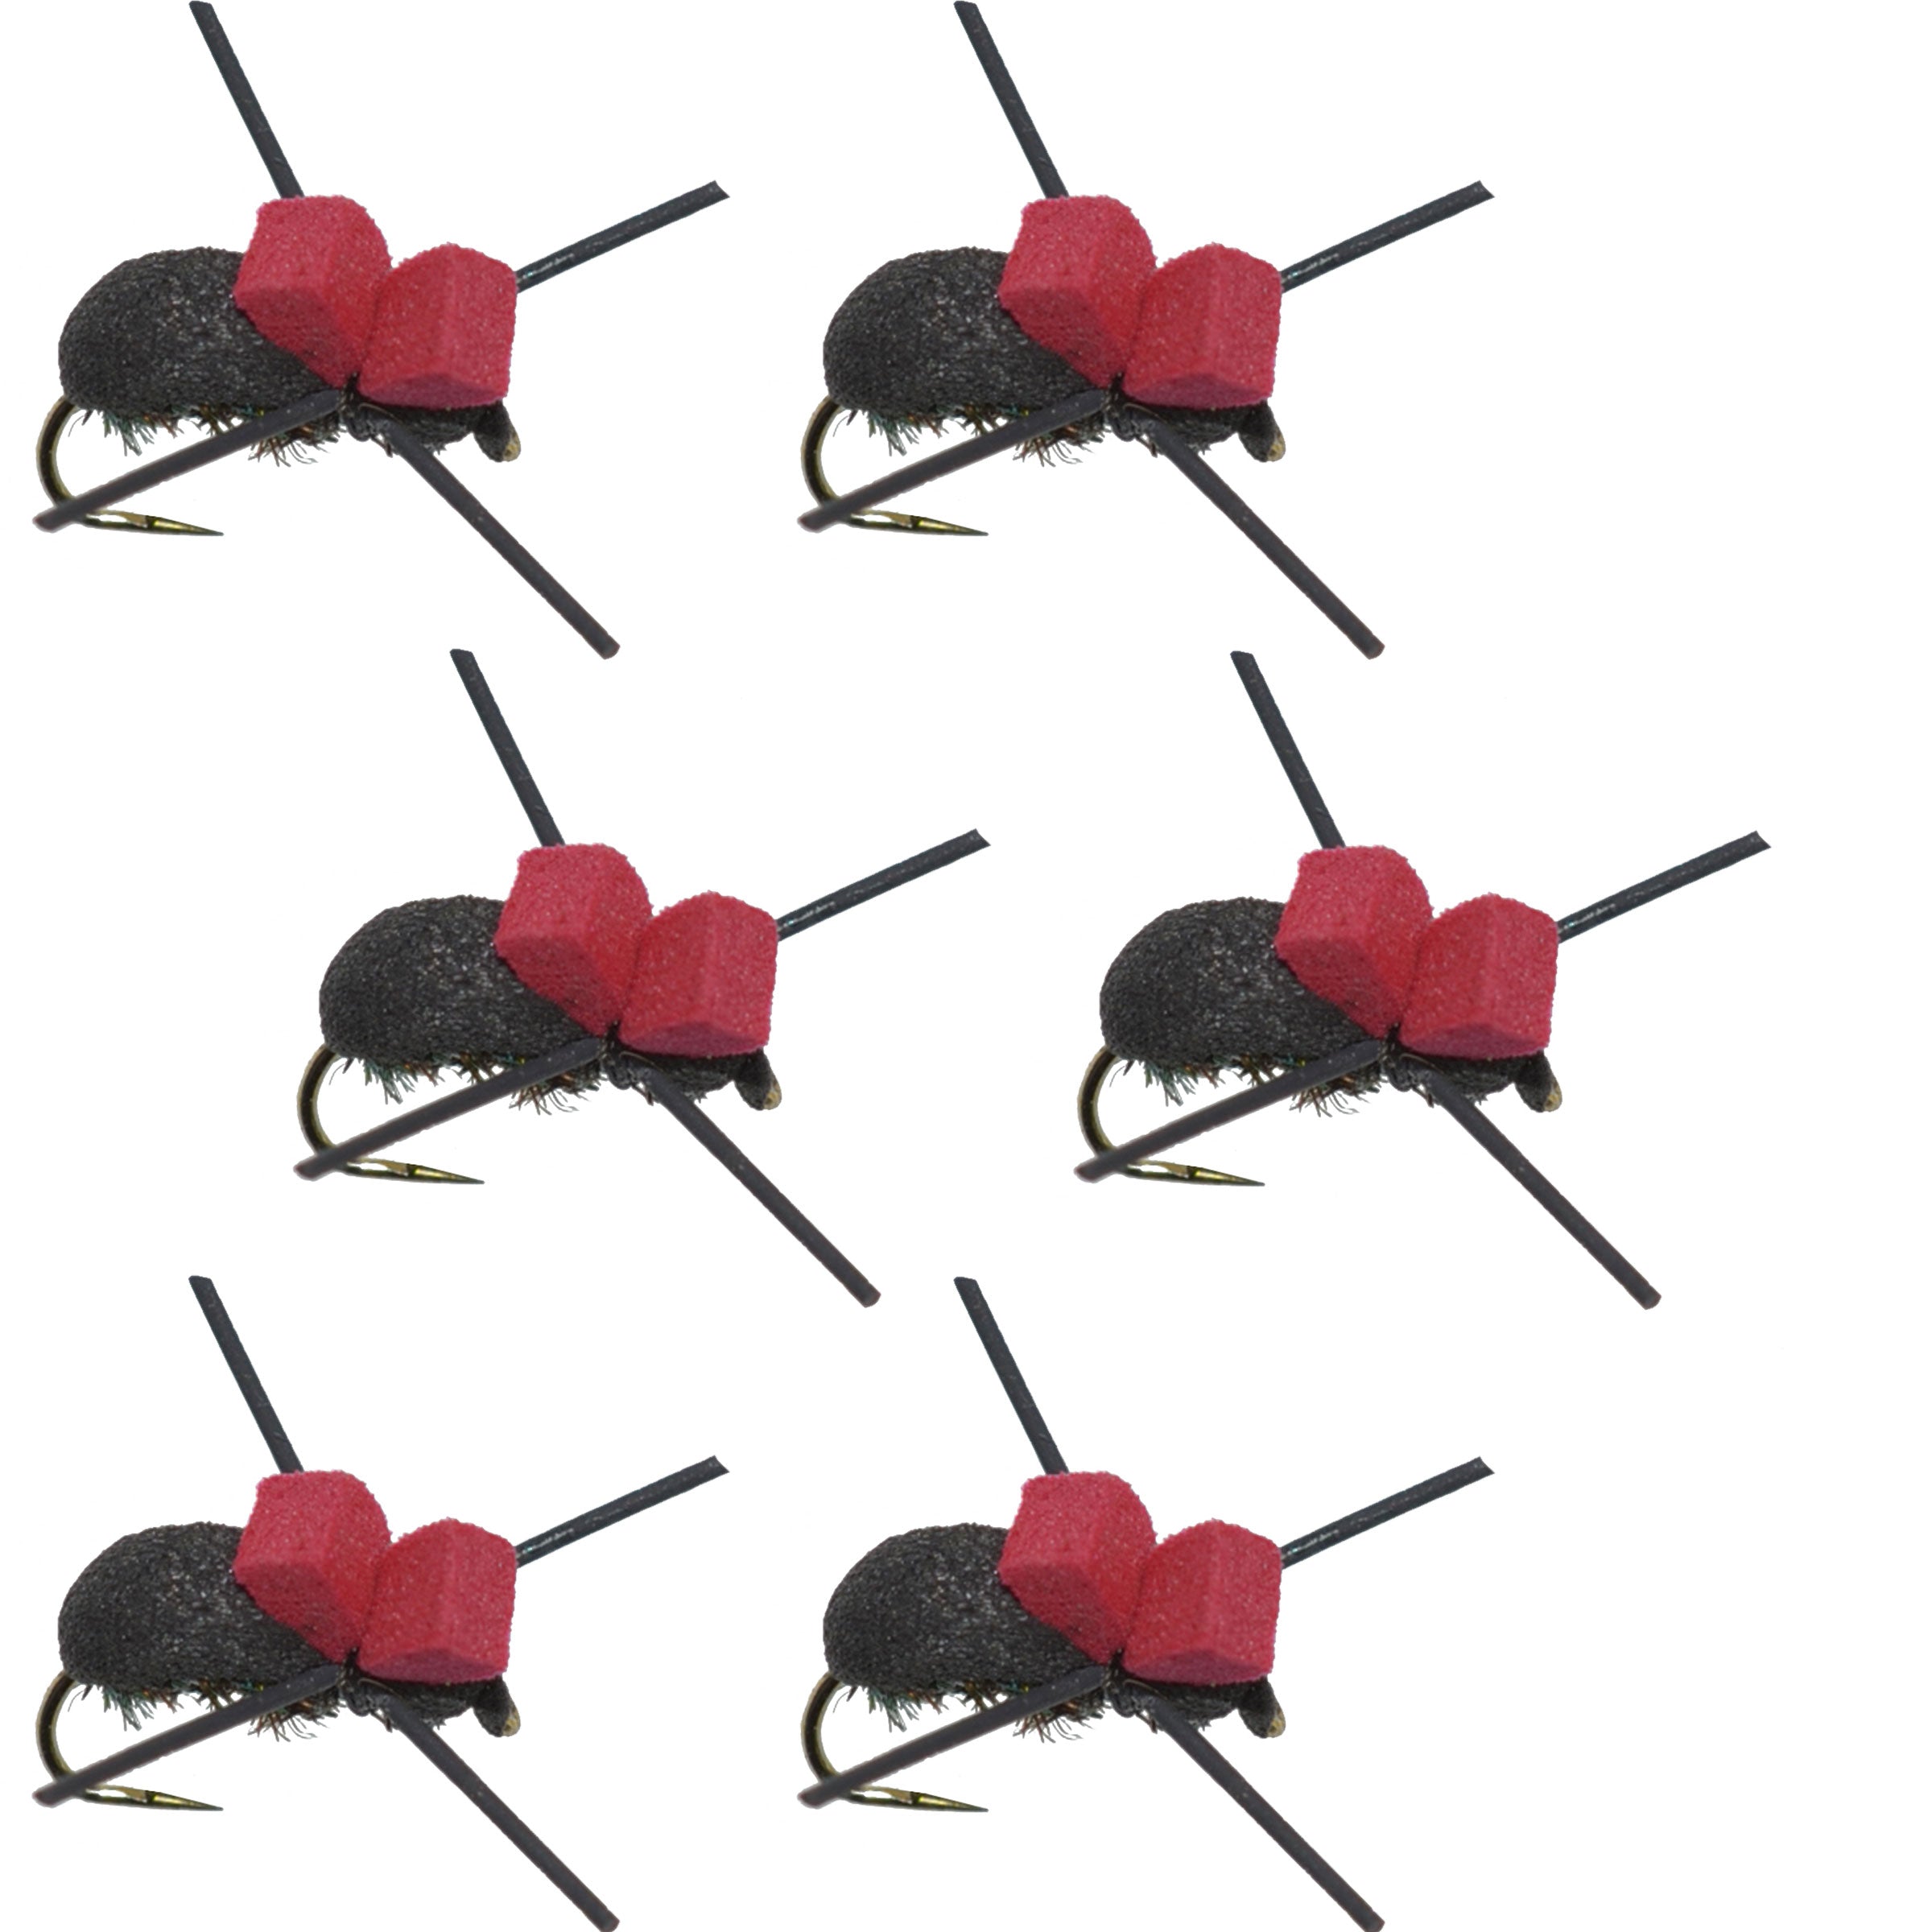 Moscas de pesca con mosca seca para trucha terrestre, escarabajo de espuma negra, sin rebaba, parte superior roja, 6 moscas, tamaño 14